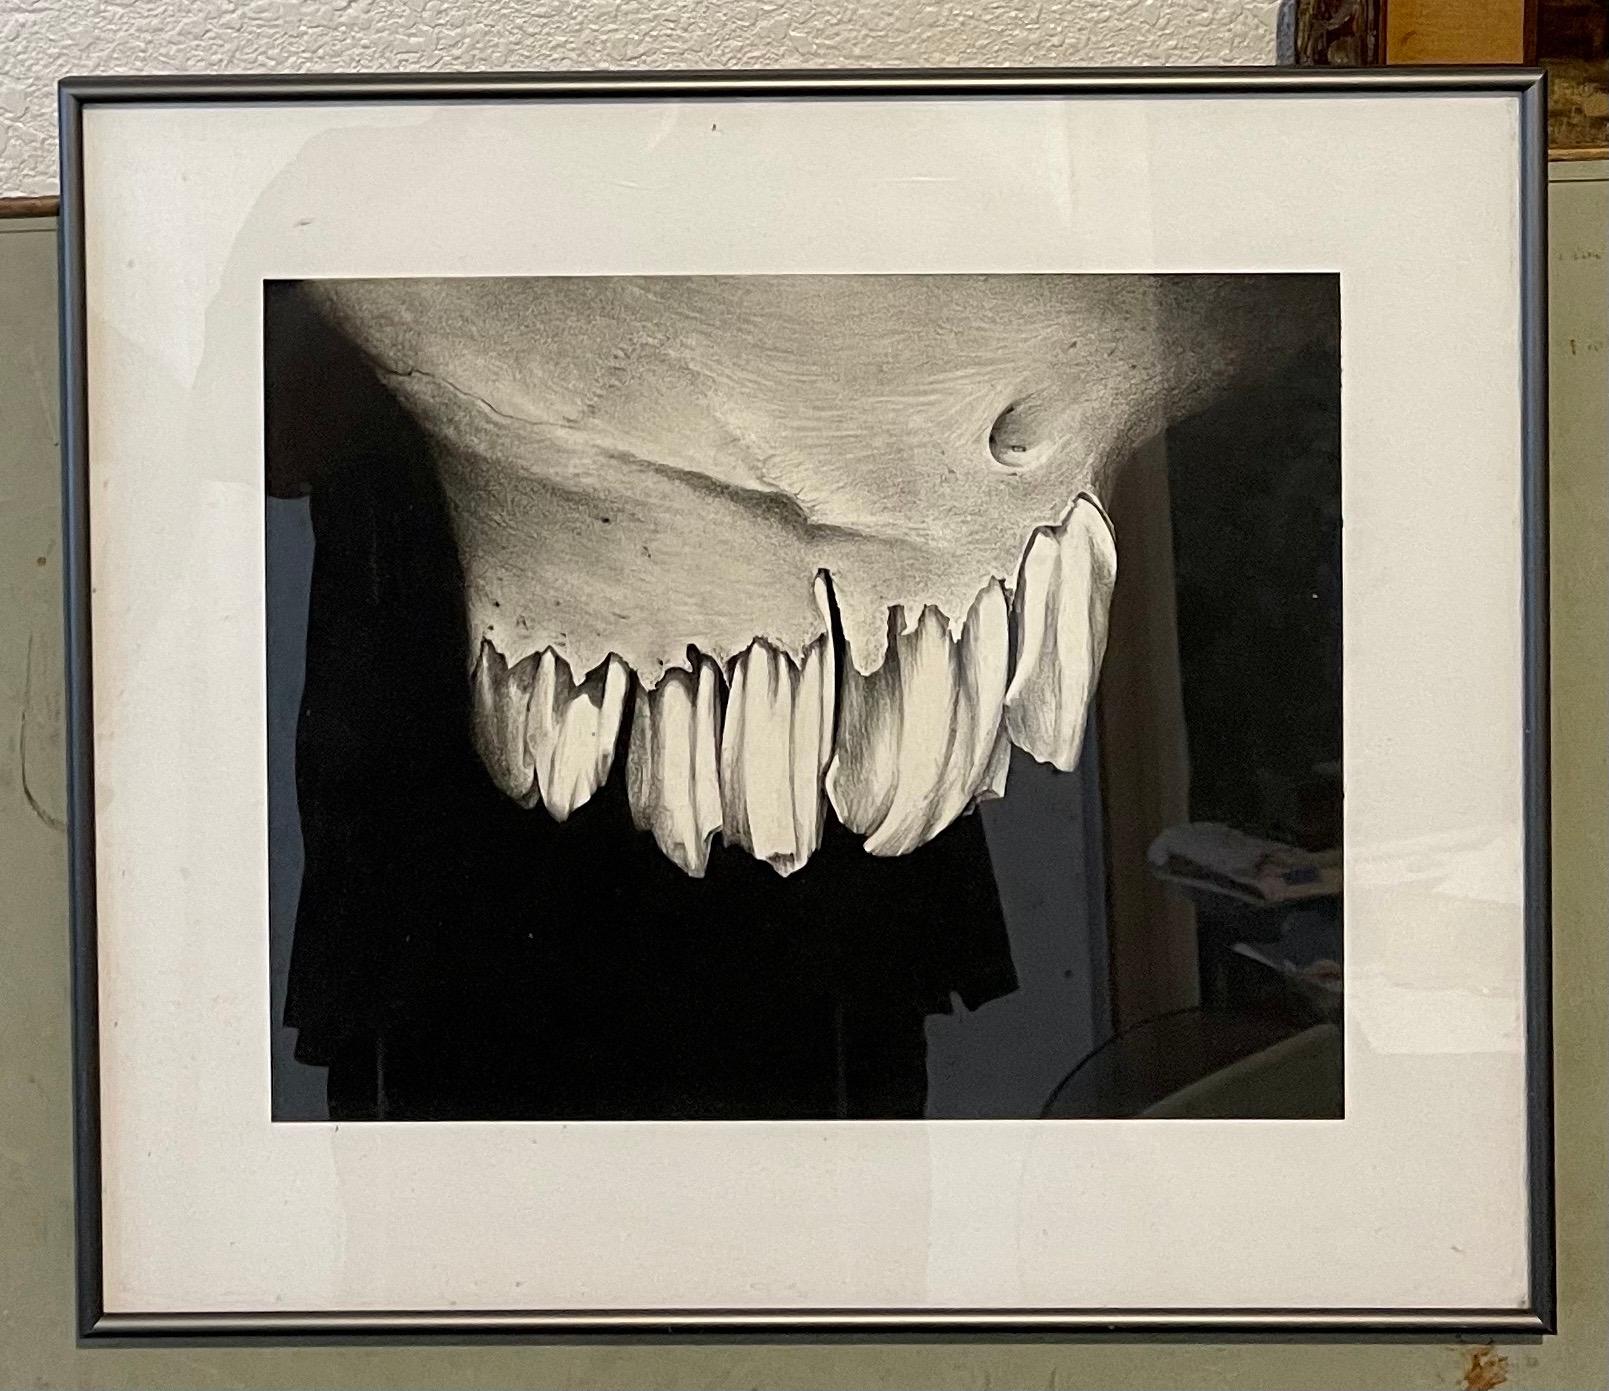 Zahn (aus der Serie Knochenzeichnungen)
1994
Holzkohlezeichnung auf Papier
11 x 14 Zoll
Kohlestudie von abstrakten Zähnen (perfekt für eine Zahnarztpraxis!)

Erica Prudhomme lernte einige der Grundlagen von ihrem künstlerischen Vater und seinem